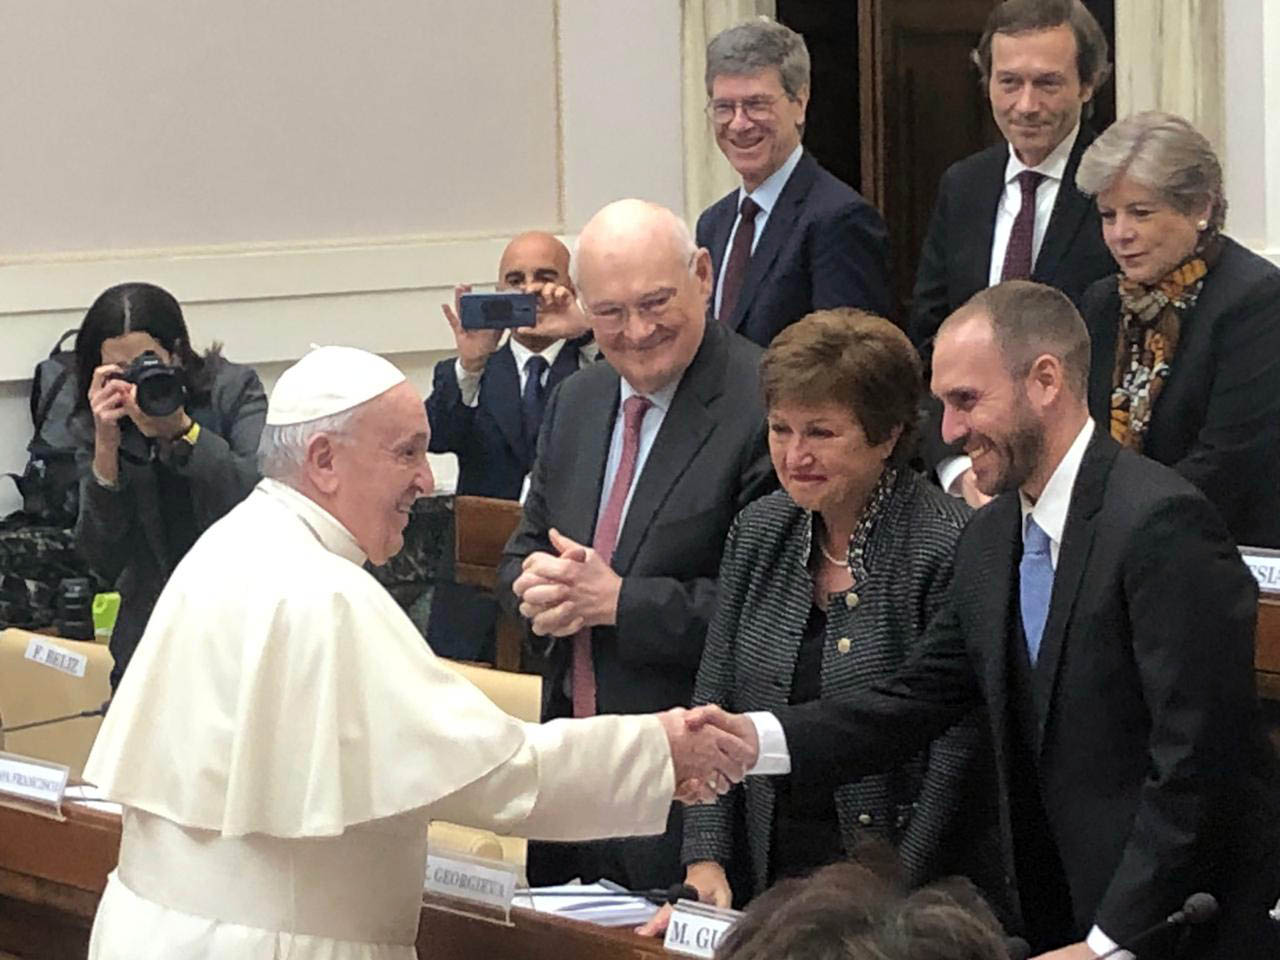 El ministro de Economía, Martín Guzmán, se reunirá mañana con el papa Francisco en el Vaticano como parte de su visita a Roma. Imagen de archivo del día 5 de febrero 2020.